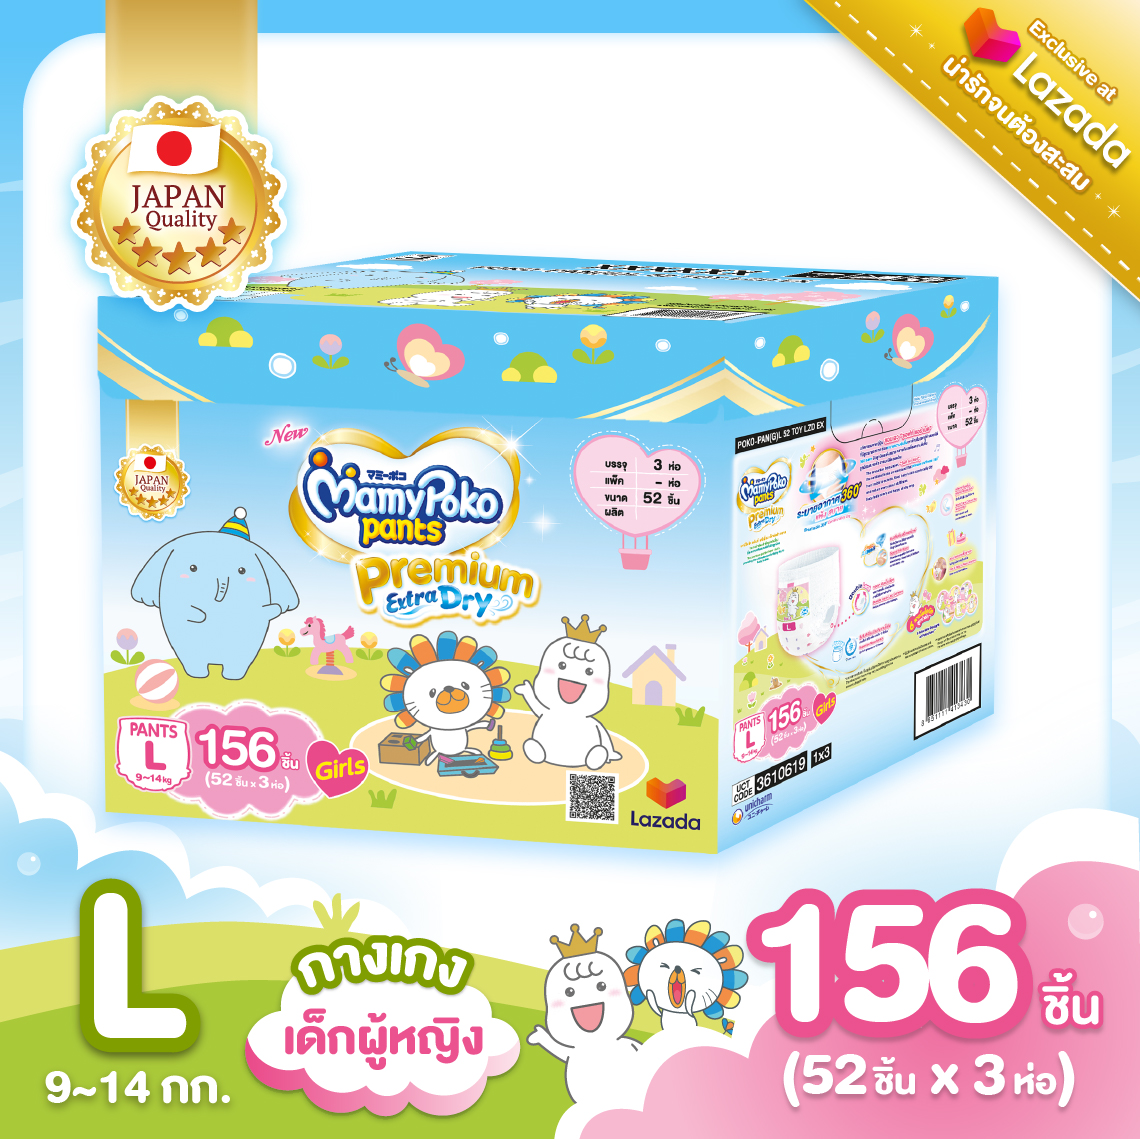 [ส่งฟรี มีทุกไซส์] MamyPoko Pants Premium Extra Dry (Toy Box) ผ้าอ้อมเด็กแบบกางเกง มามี่โพโค (กล่องเก็บของเล่น) ไซส์ M - XXL (เด็กหญิง) พิเศษ ! Exclusive เฉพาะที่ลาซาด้าเท่านั้น !  ขนาดผ้าอ้อม L